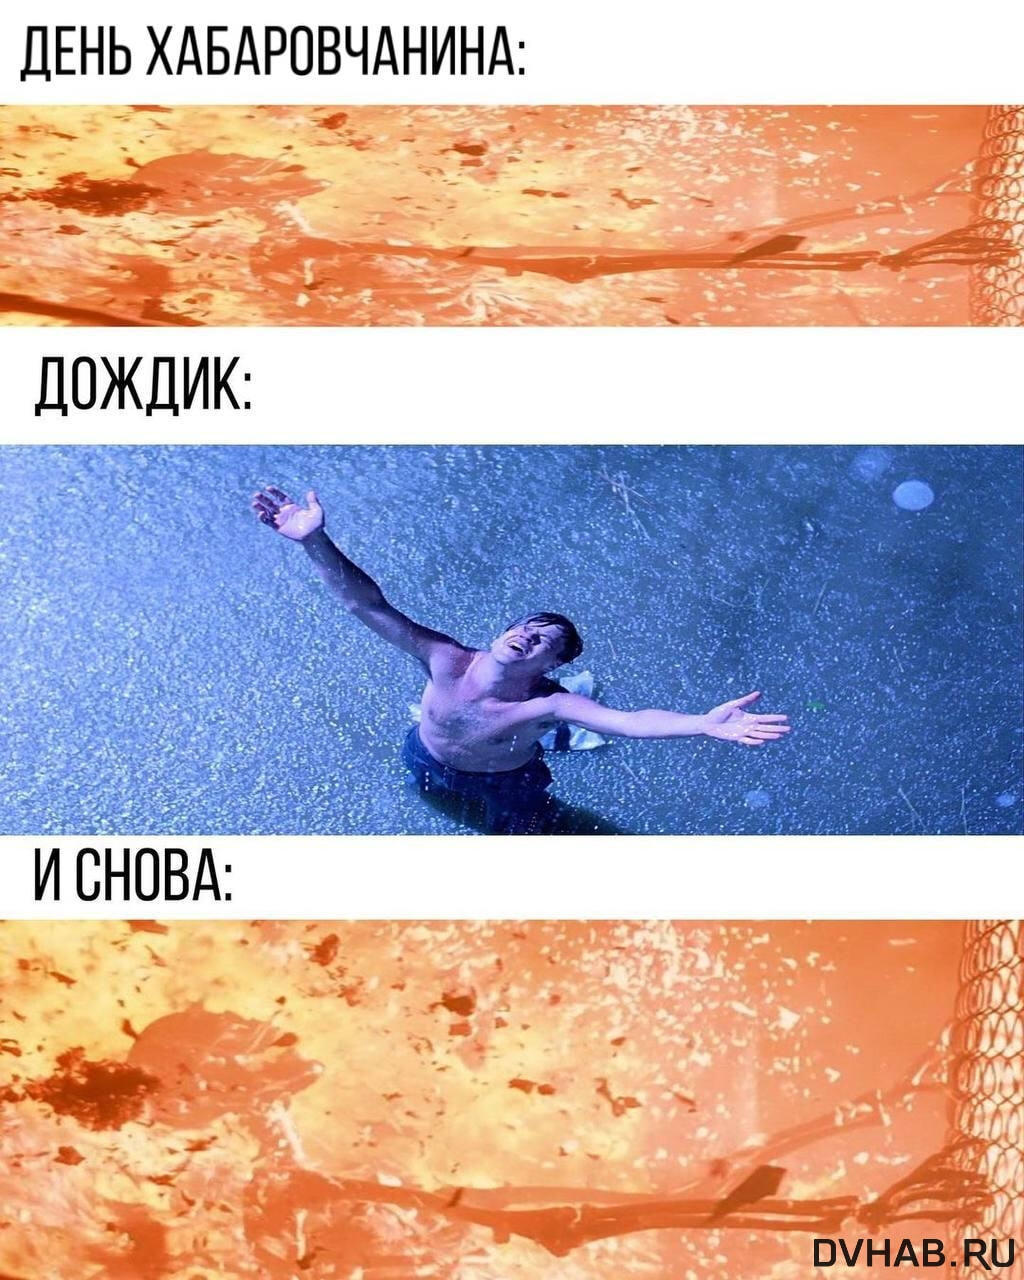 Жители Хабаровского края создали уникальную коллекцию видео